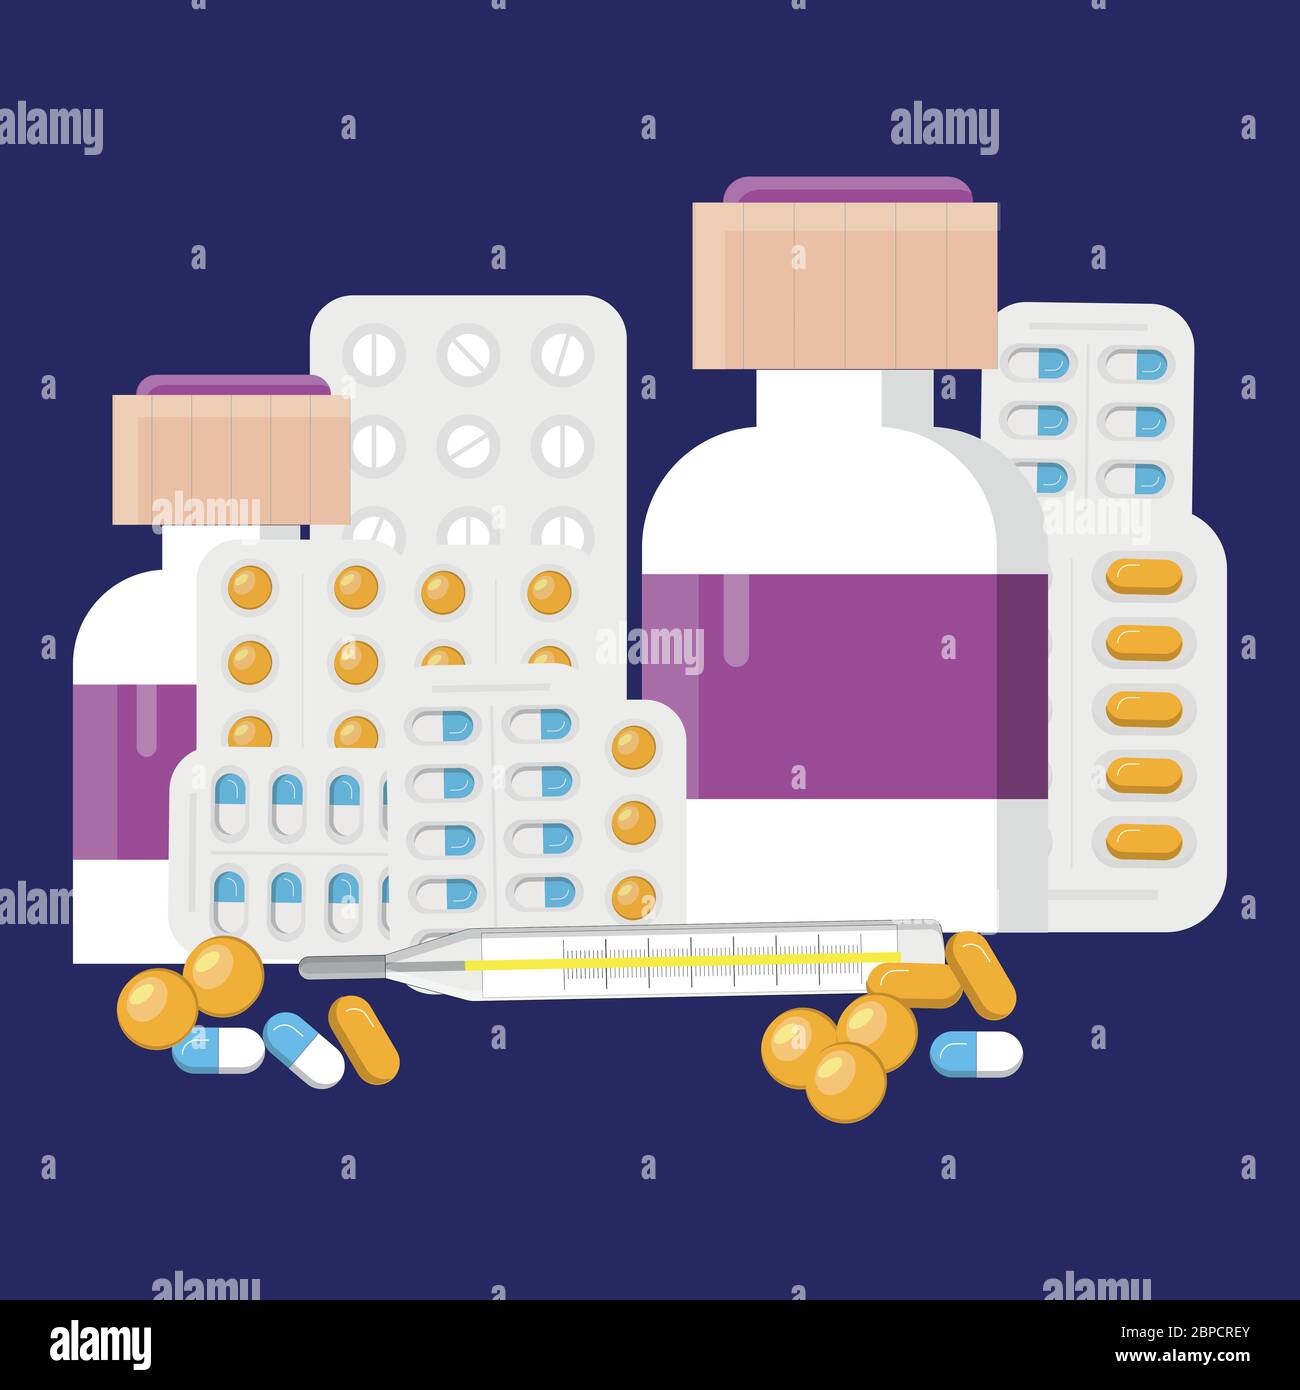 Médicaments. Médicament comprimé, pharmacie flacon de médicament et antibiotique. Médicaments analgésiques sur ordonnance, illustration isolée d'un magasin de santé Illustration de Vecteur